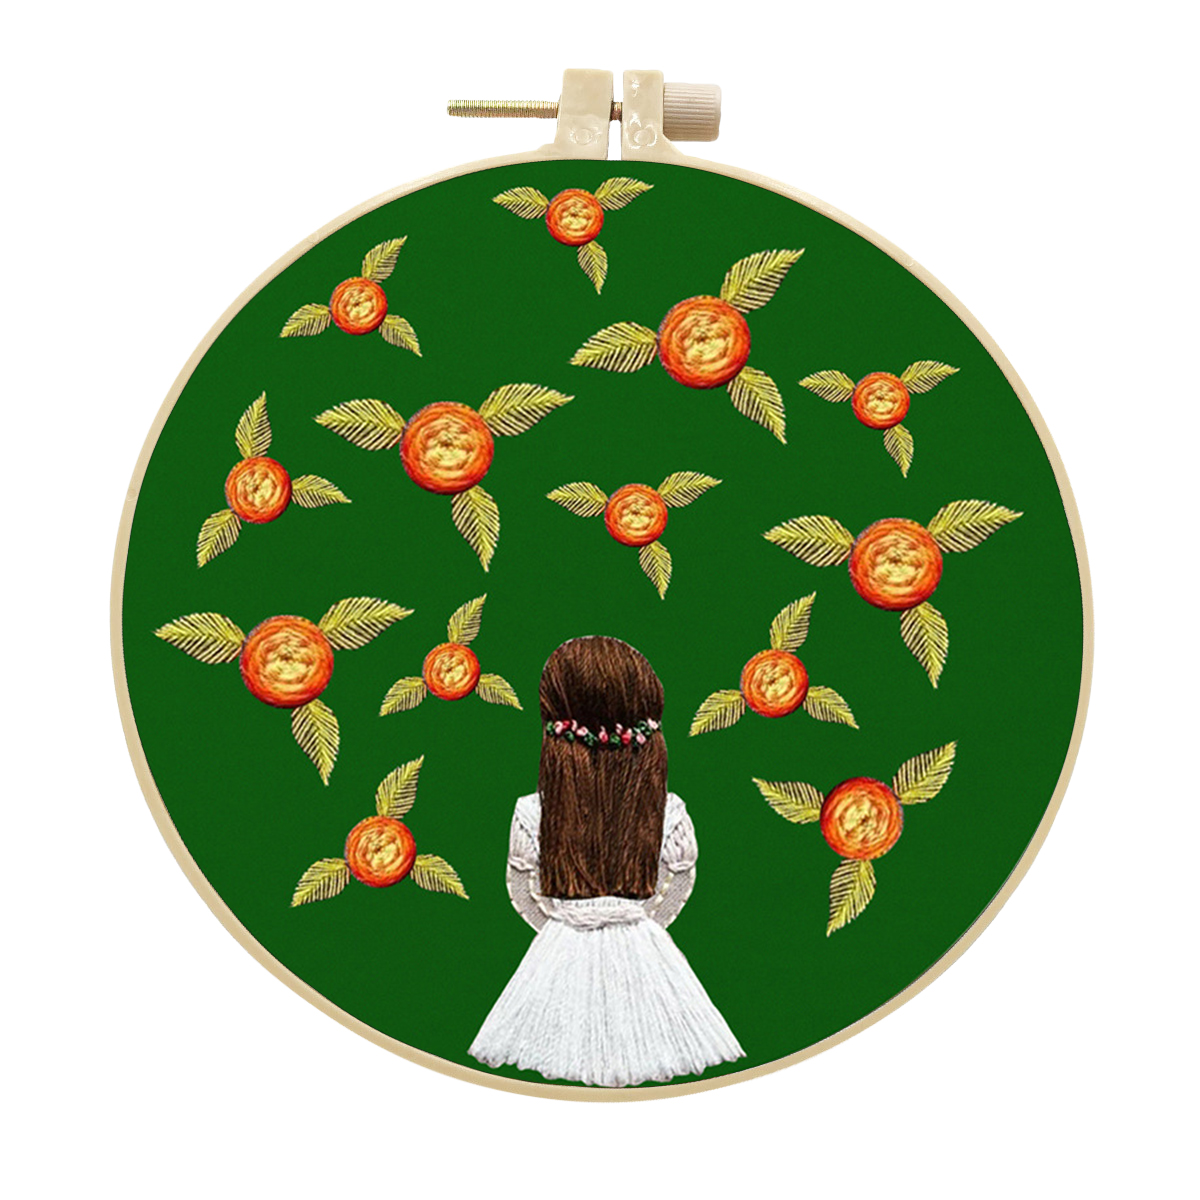 Handmade Embroidery Kit Cross stitch kit for Adult Beginner - Girl in white dress Pattern